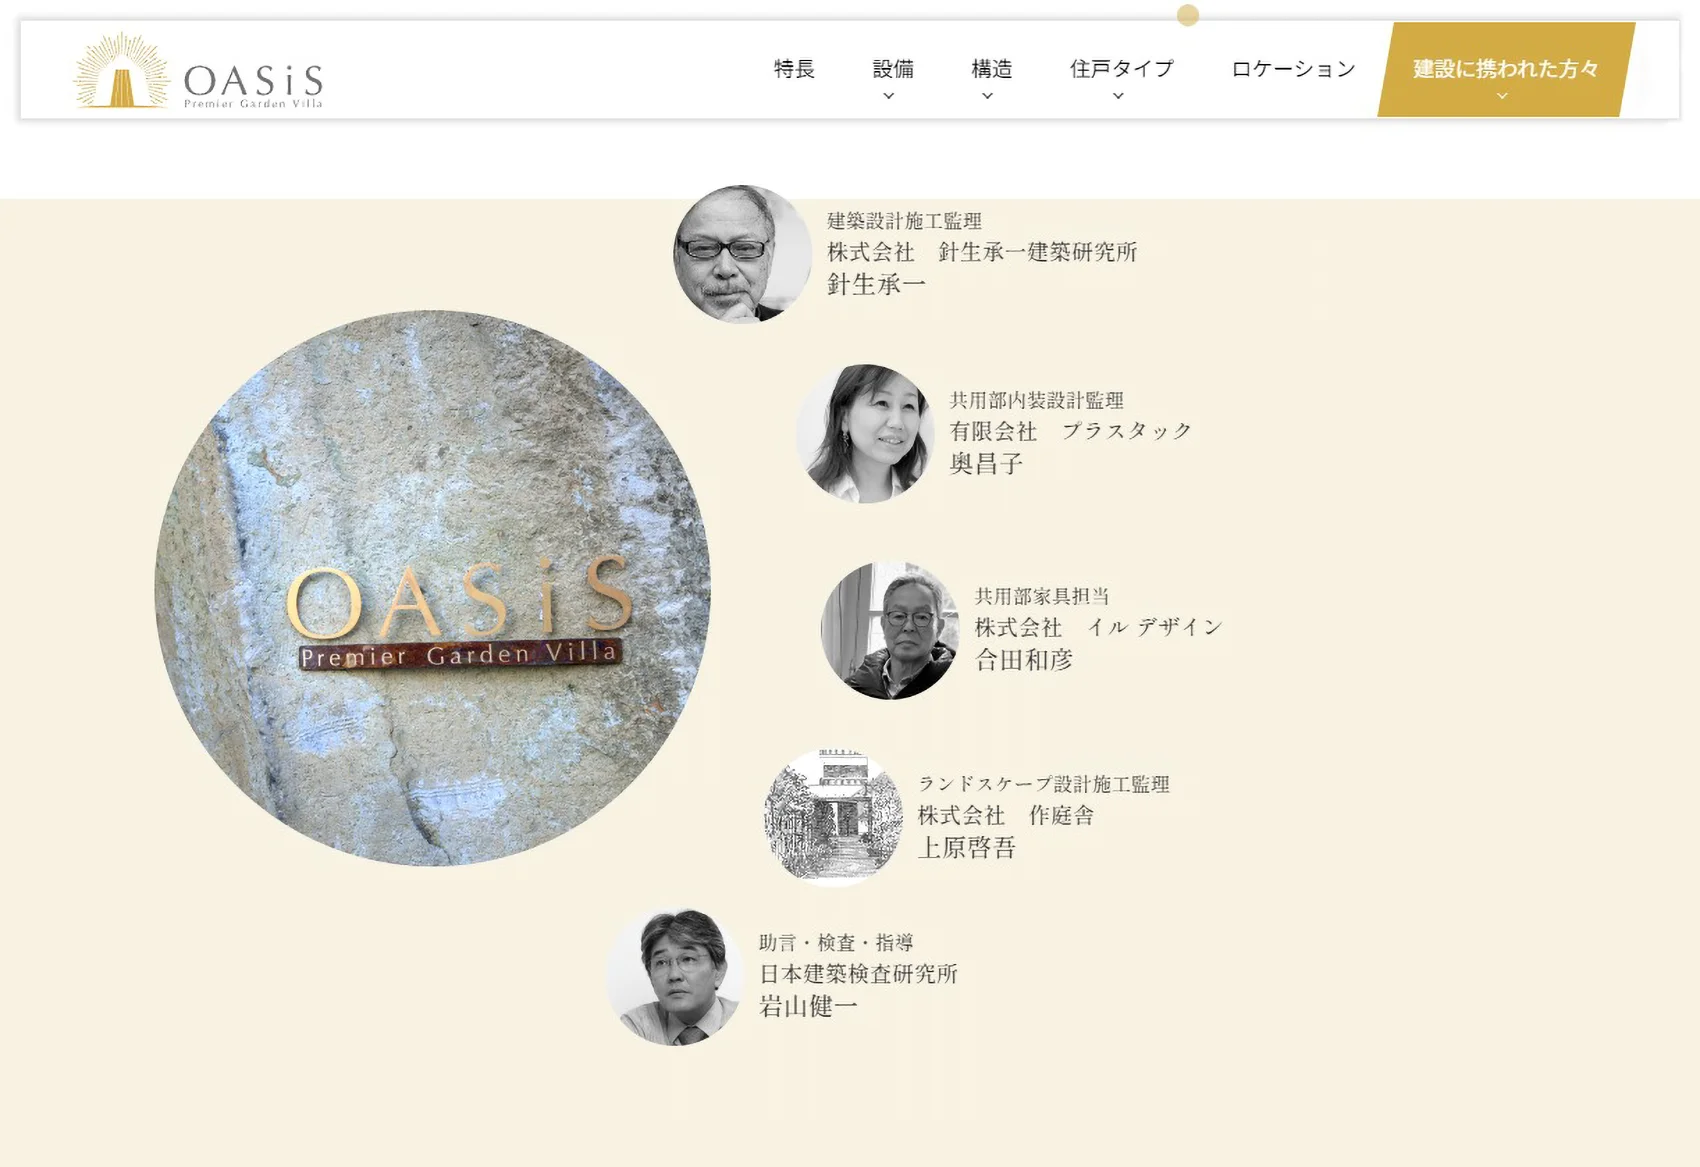 "OASiS"ホームページの 「建設に携われた方々(Collaborator)」のページ